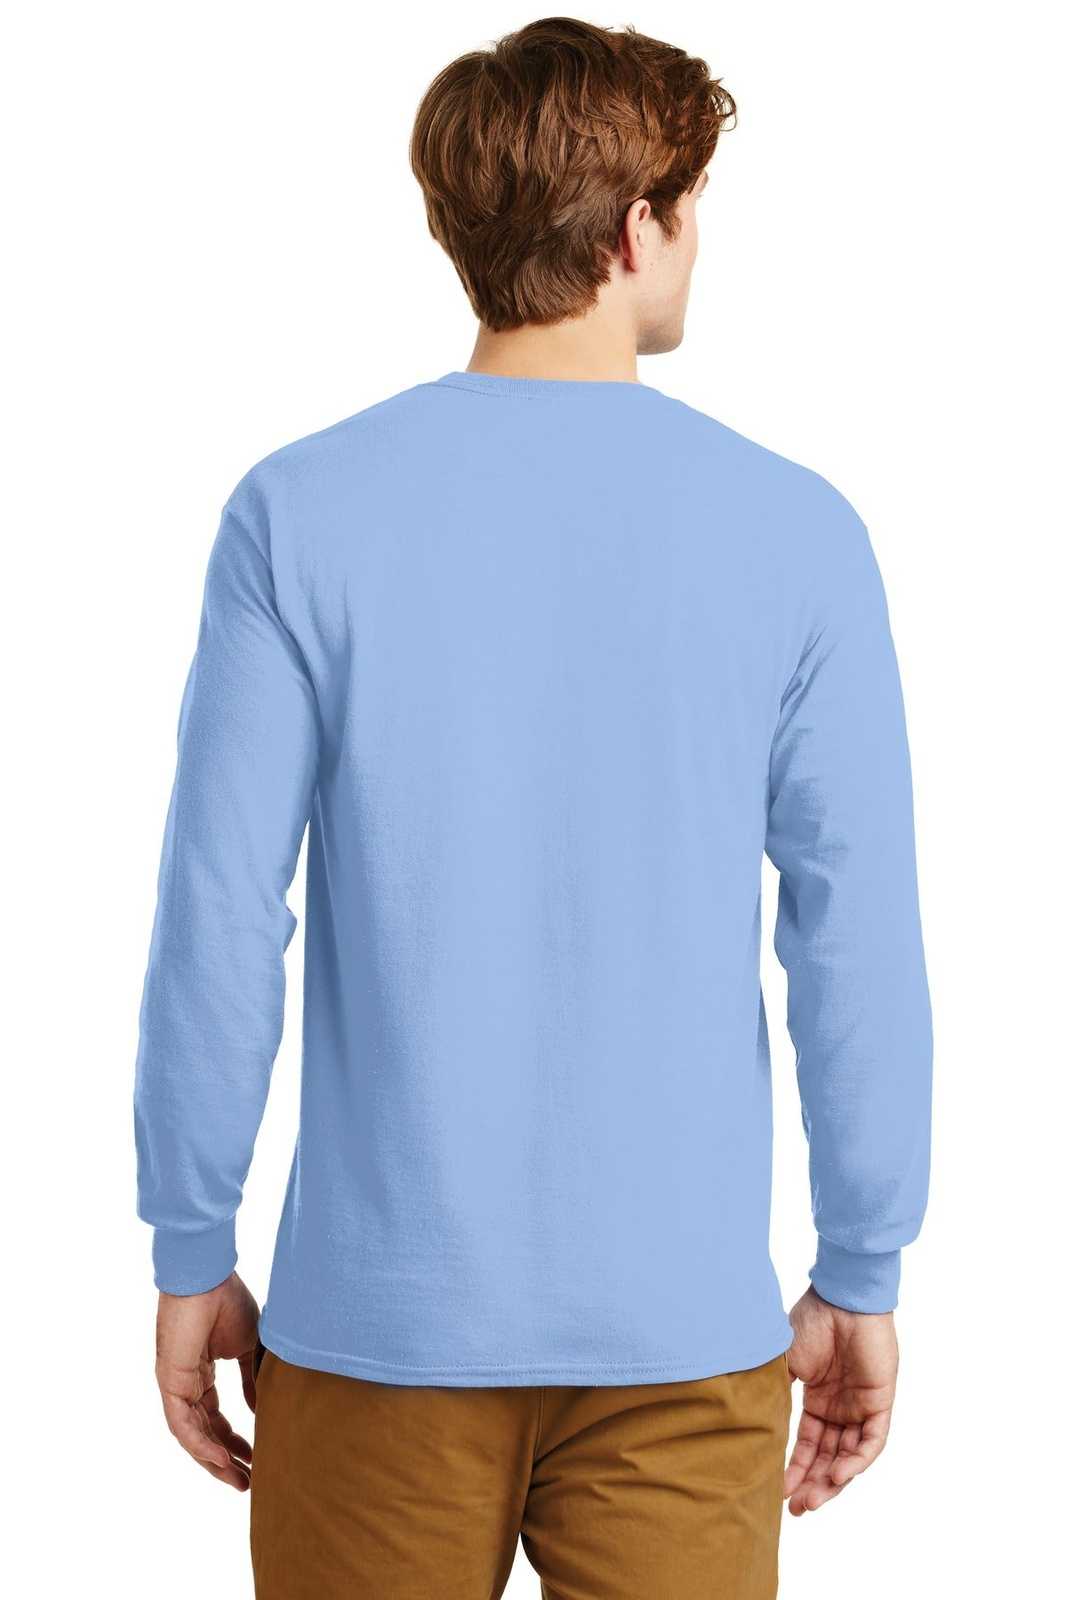 Gildan G2400 Ultra Cotton 100% Cotton Long Sleeve T-Shirt - Light Blue - HIT a Double